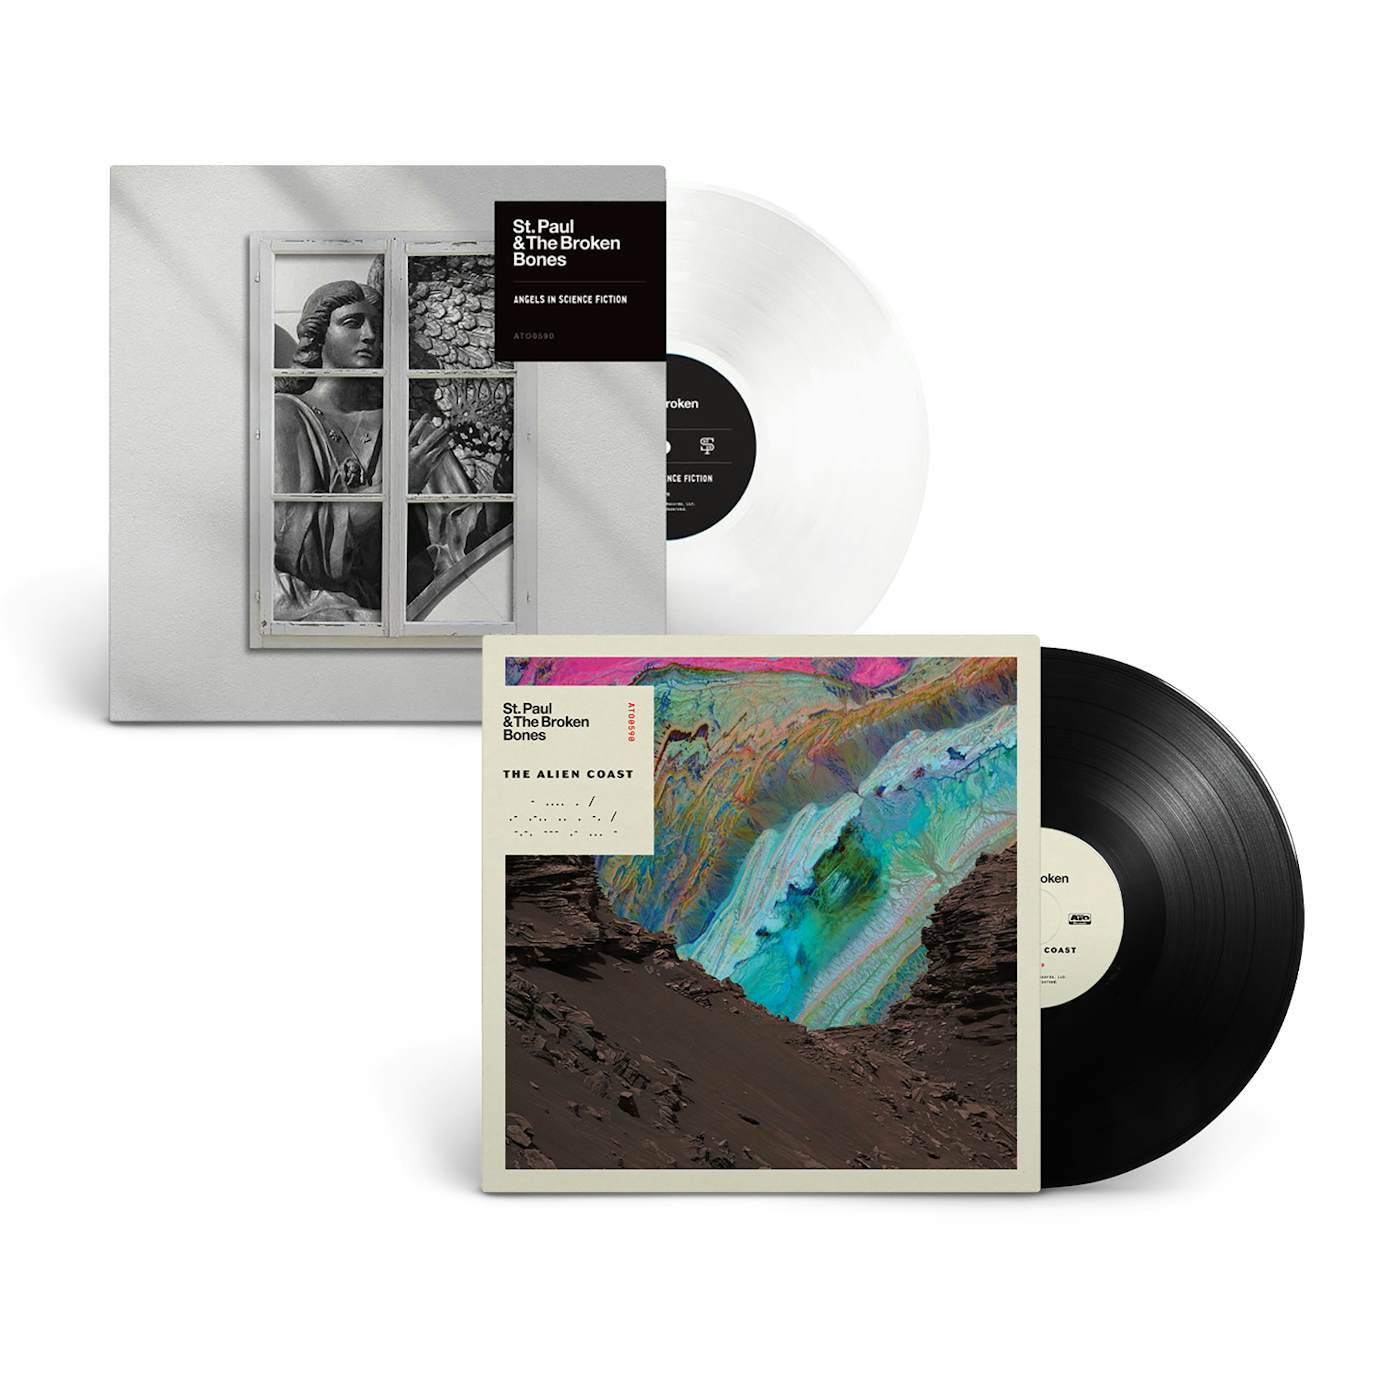 St. Paul & The Broken Bones – ‘Angels In Science Fiction’ + ‘The Alien Coast’ (Vinyl Bundle)